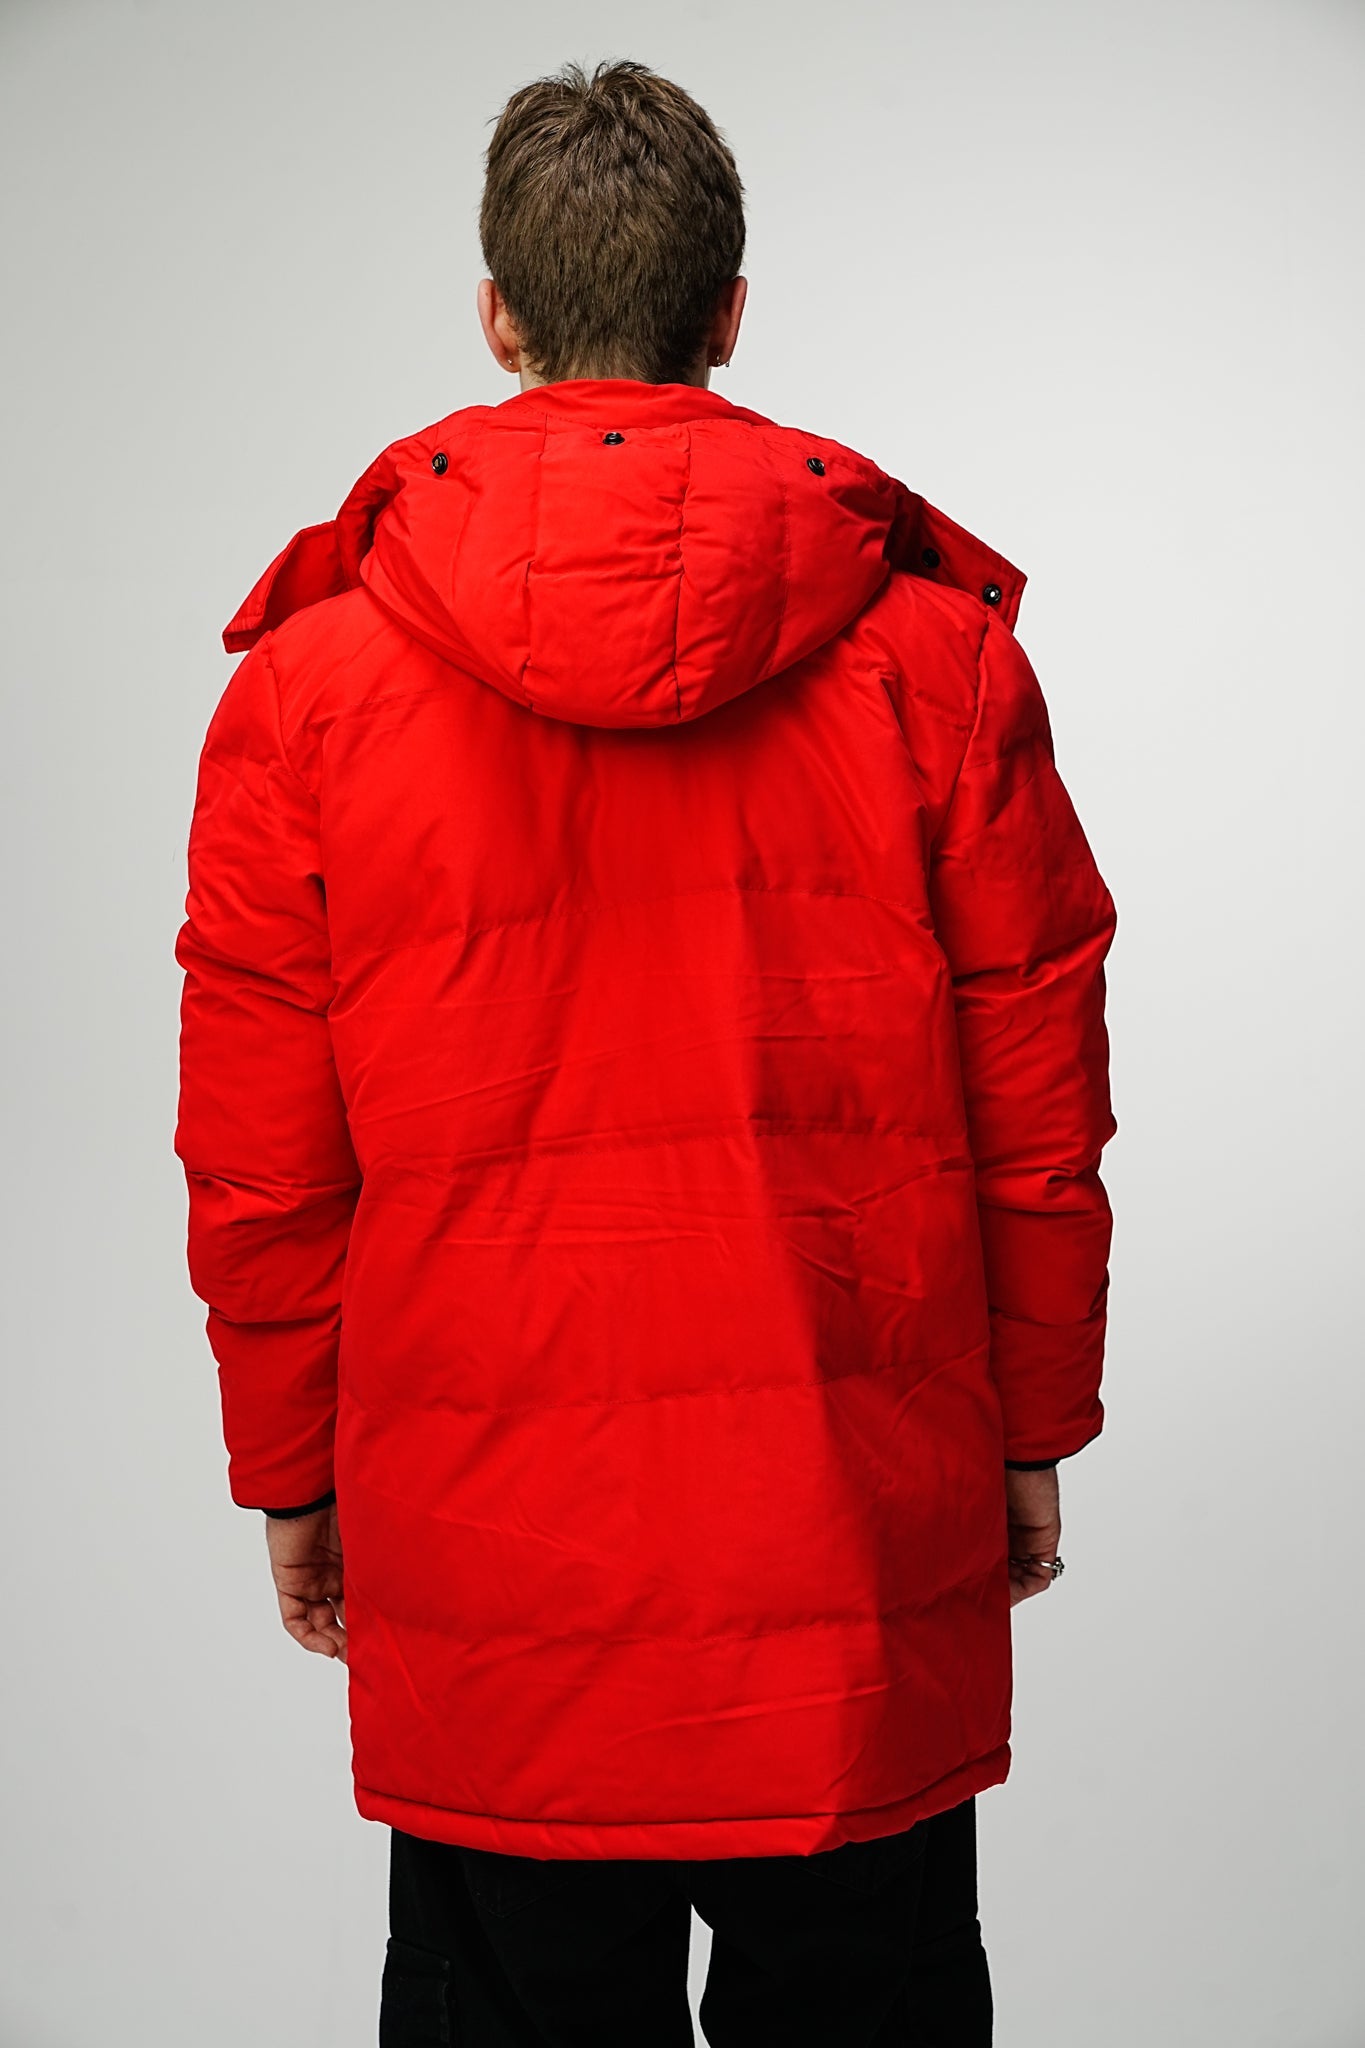 Heavy Red Winter Jacket - UNEFFECTED STUDIOS® - JACKET - UNEFFECTED